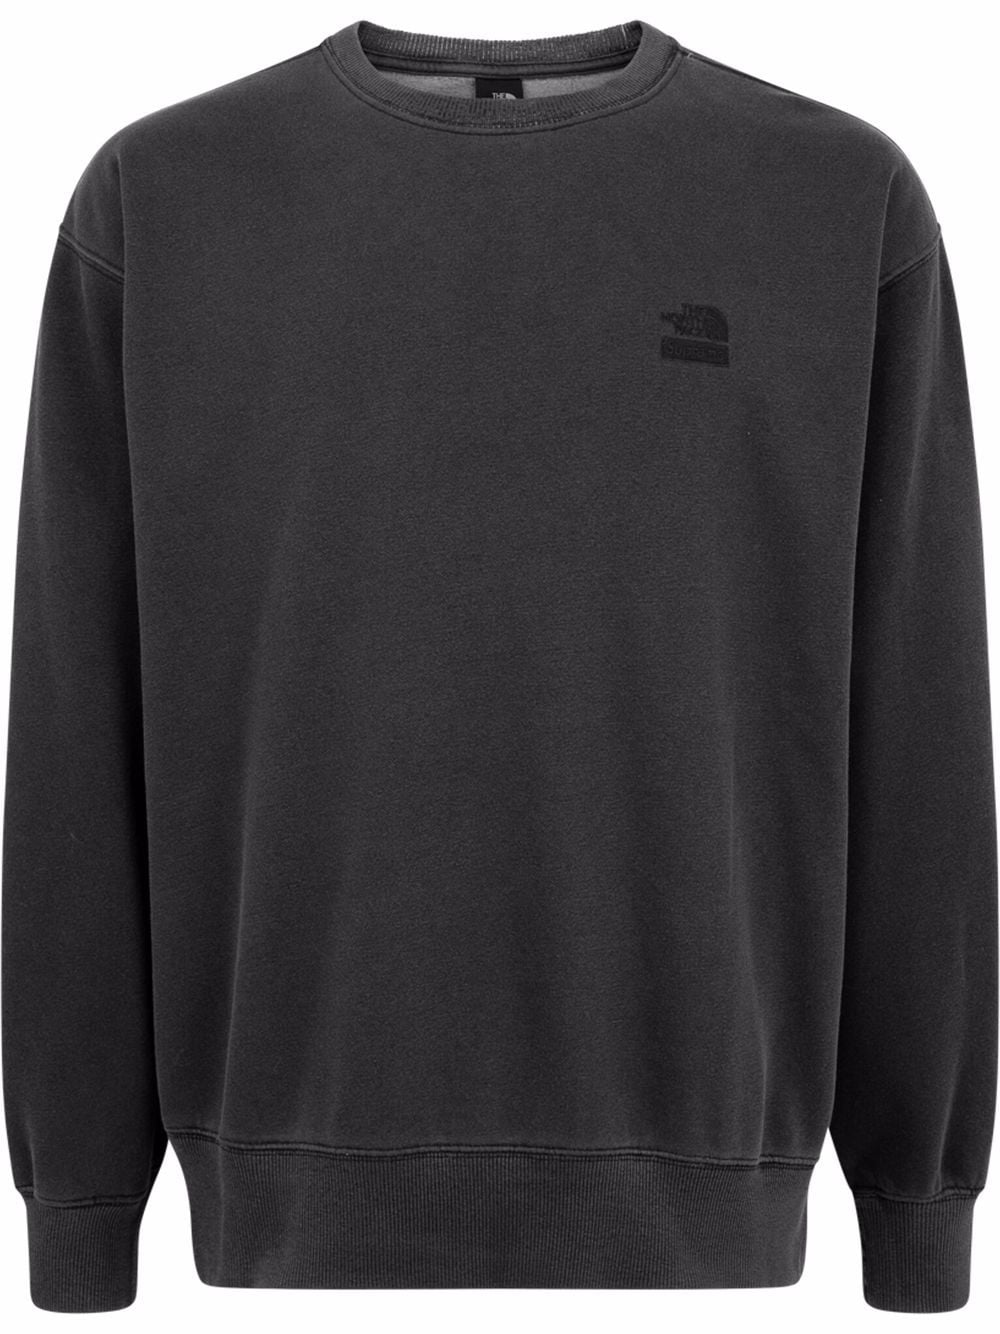 Supreme x The North Face embroidered logo sweatshirt - Black von Supreme